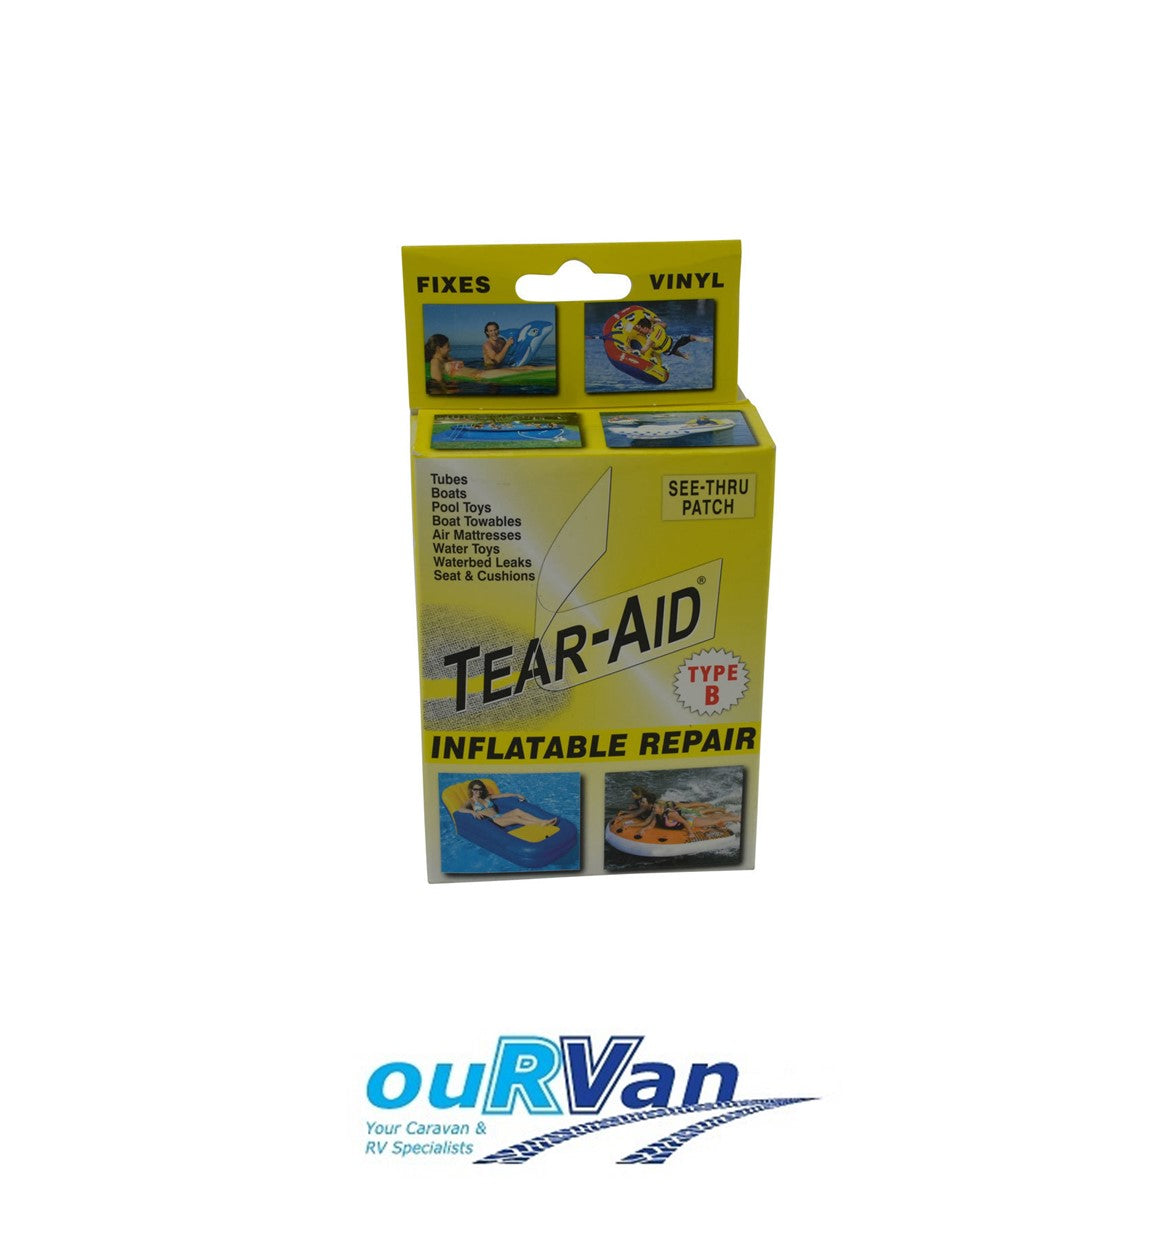 Tear-Aid Inflatable Repair